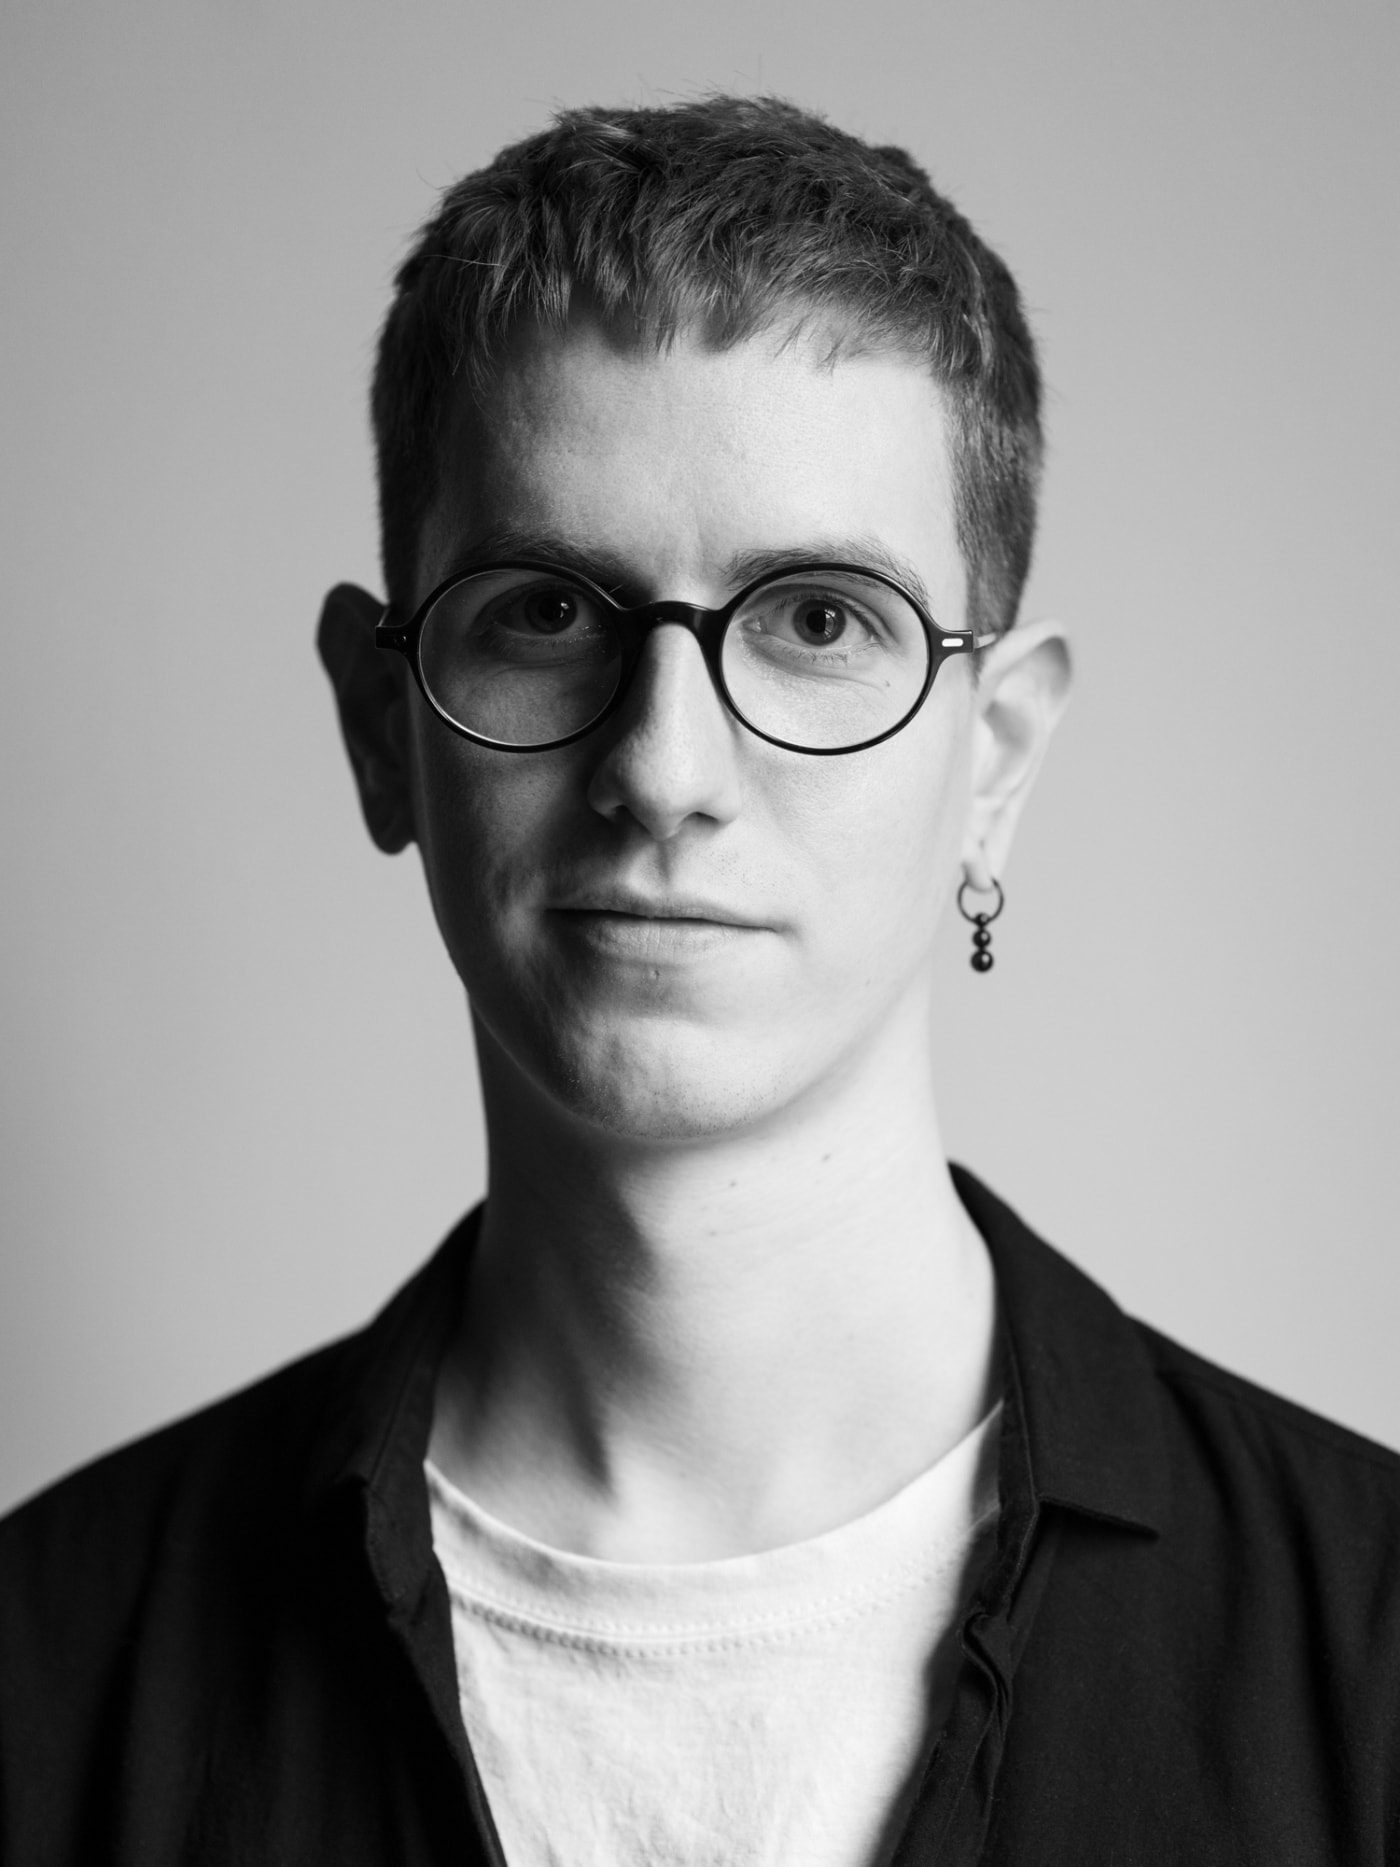 Markus Heft posiert für ein Portrait in Schwarz Weiß. Er schaut direkt in die Kamera. Markus Heft trägt eine runde Brille und einen hängenden Ohrring.